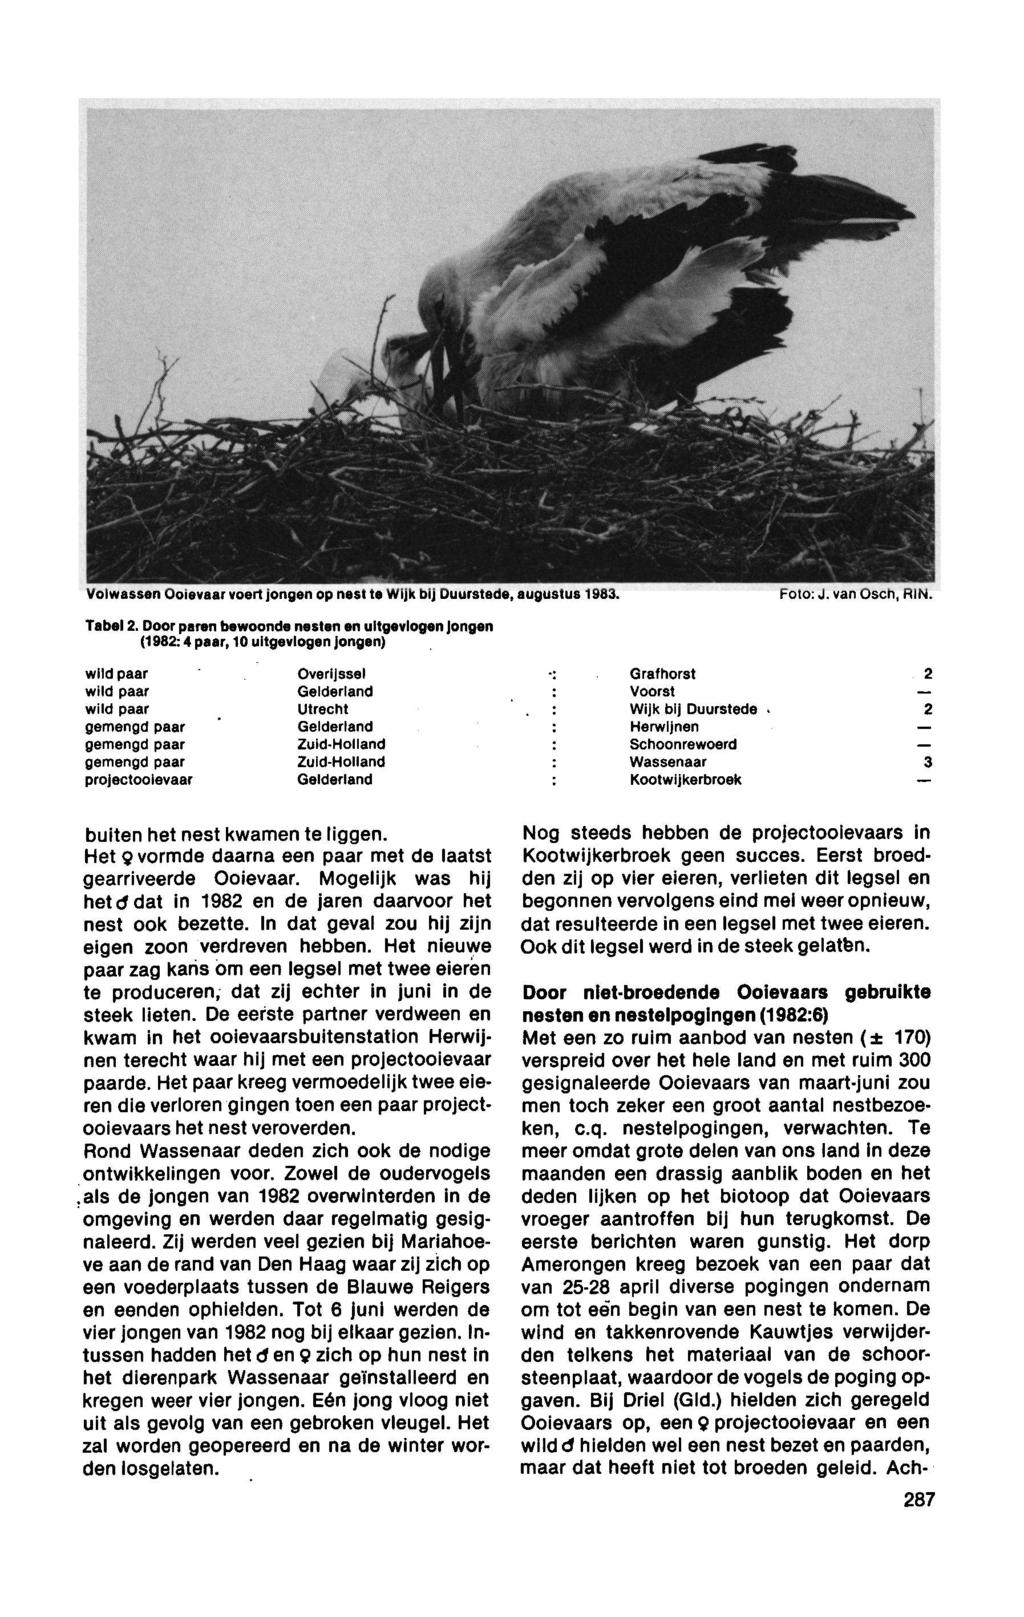 wild paar Gelderland Voorst Volwassen Ooievaar voert jongen op nest tewijk bij Duurstede, augustus 1983. Foto:J. van Osch, RIN. Tabel 2.